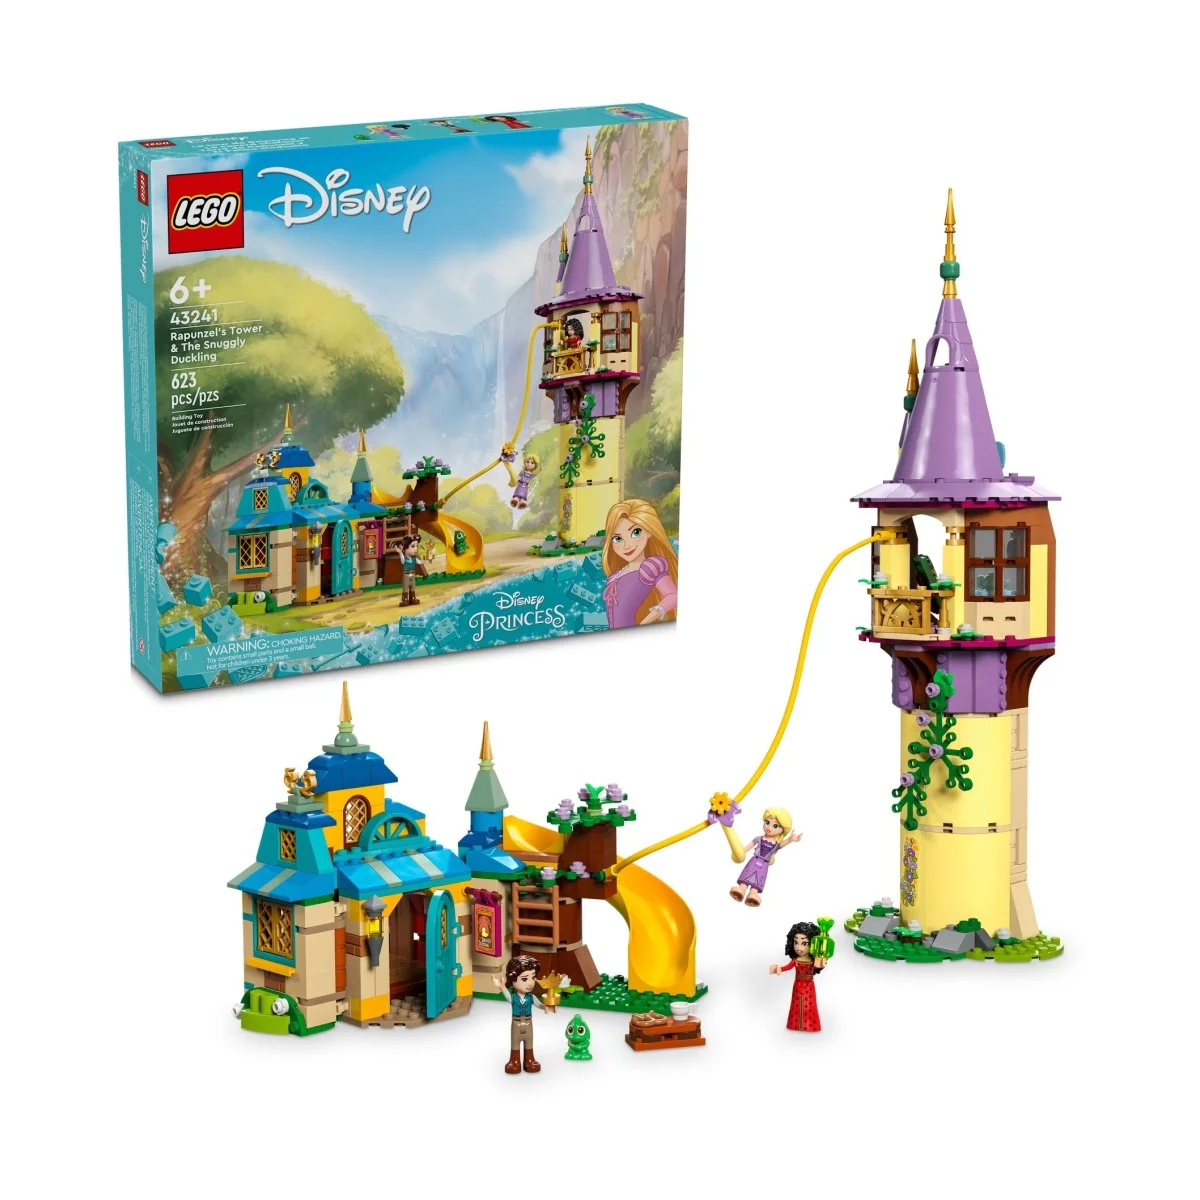 Конструктор Lego Disney Rapunzel's Tower & The Snuggly Duckling 43241, 623 детали пазлы рапунцель из мультфильма disney новые подарки пазлы из серии принцесс игрушки для детей 300 500 1000 шт